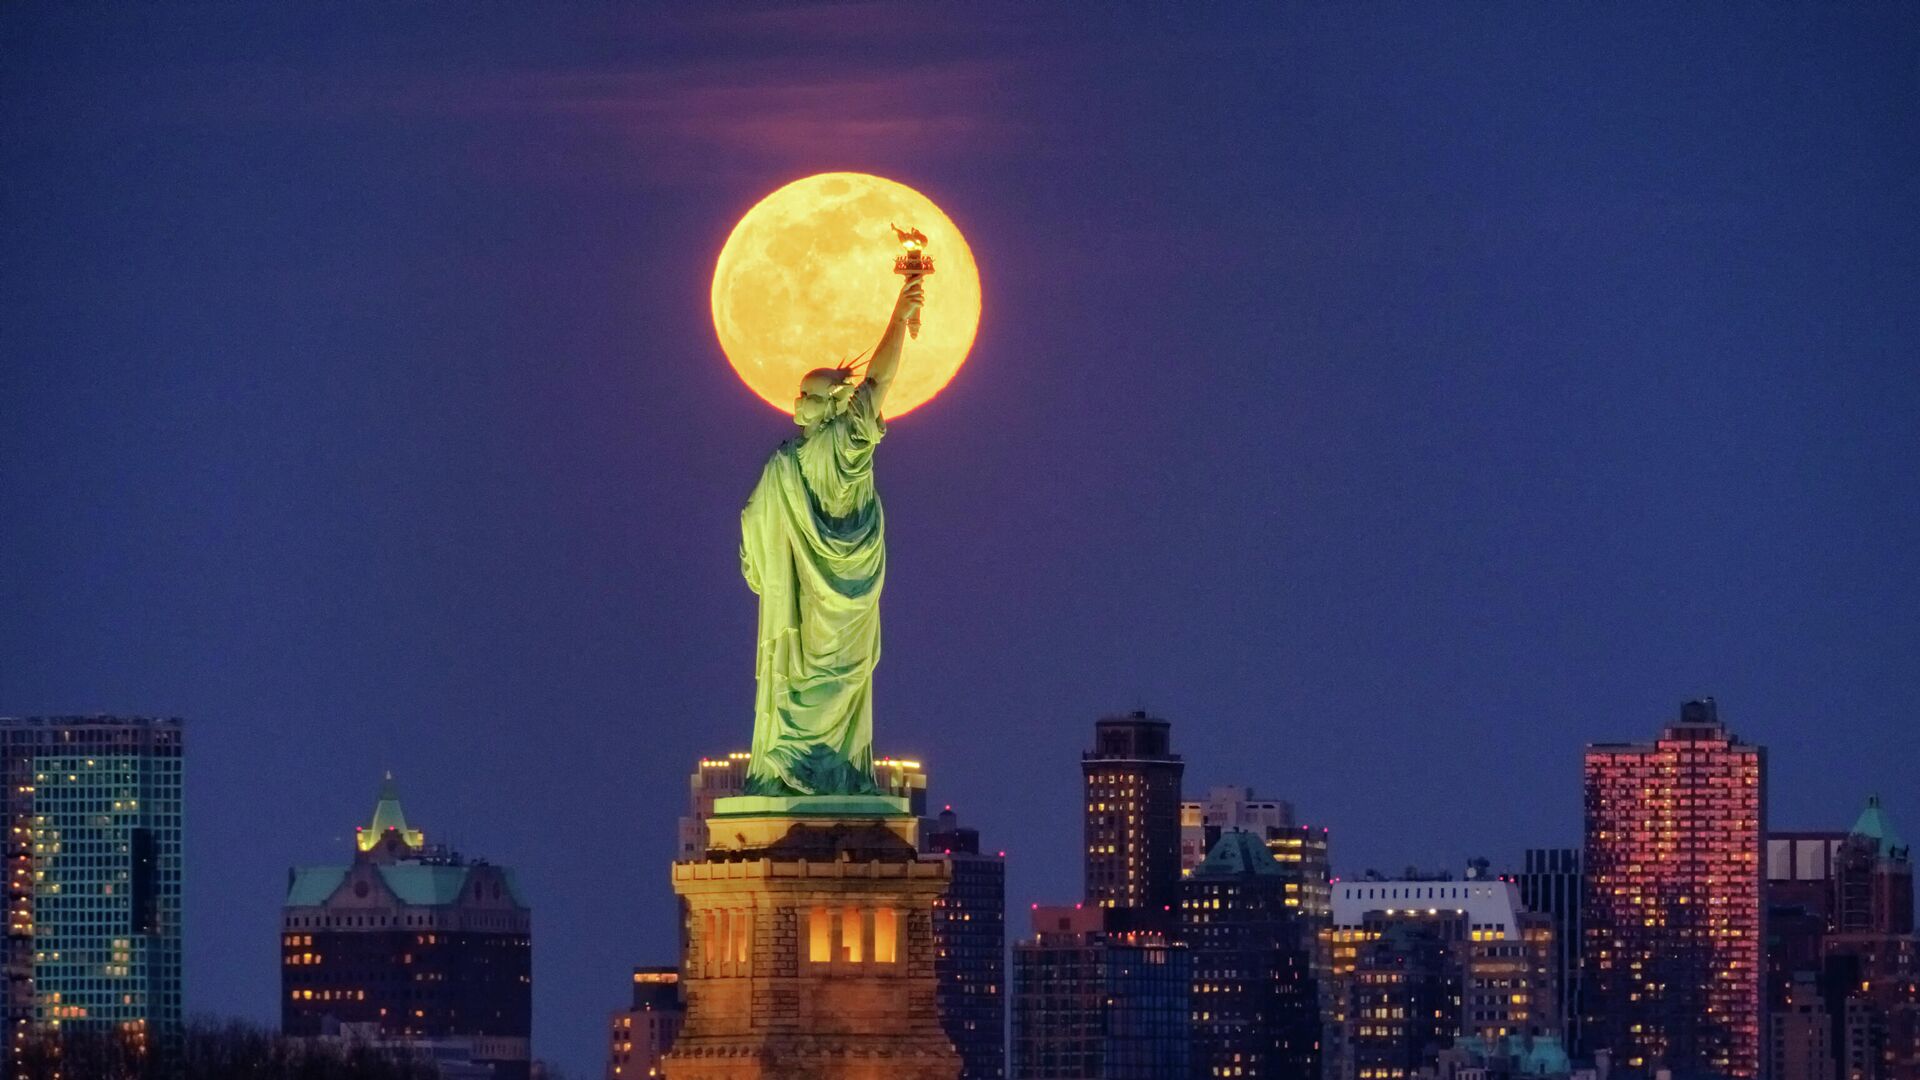 Статуя Свободы в Нью-Йорке на фоне Луны - РИА Новости, 1920, 20.11.2020